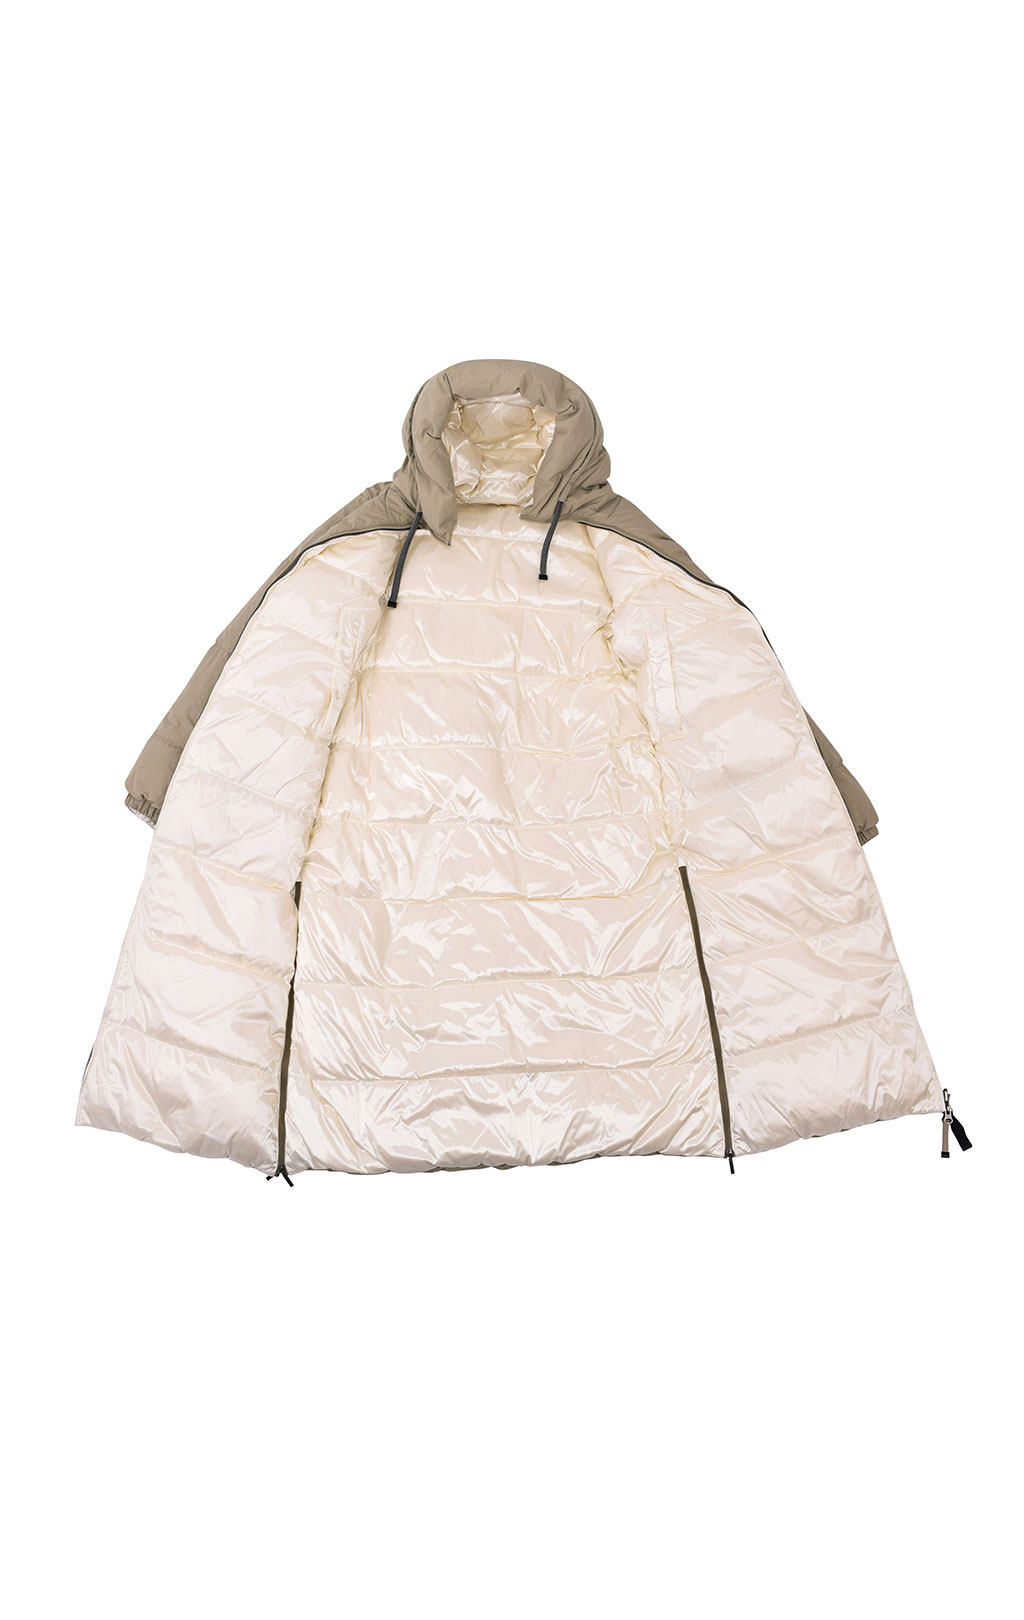 Женское пальто пуховое PARAJUMPERS SLEEPING BAG двустороннее FW 20/21 overcast/off white 